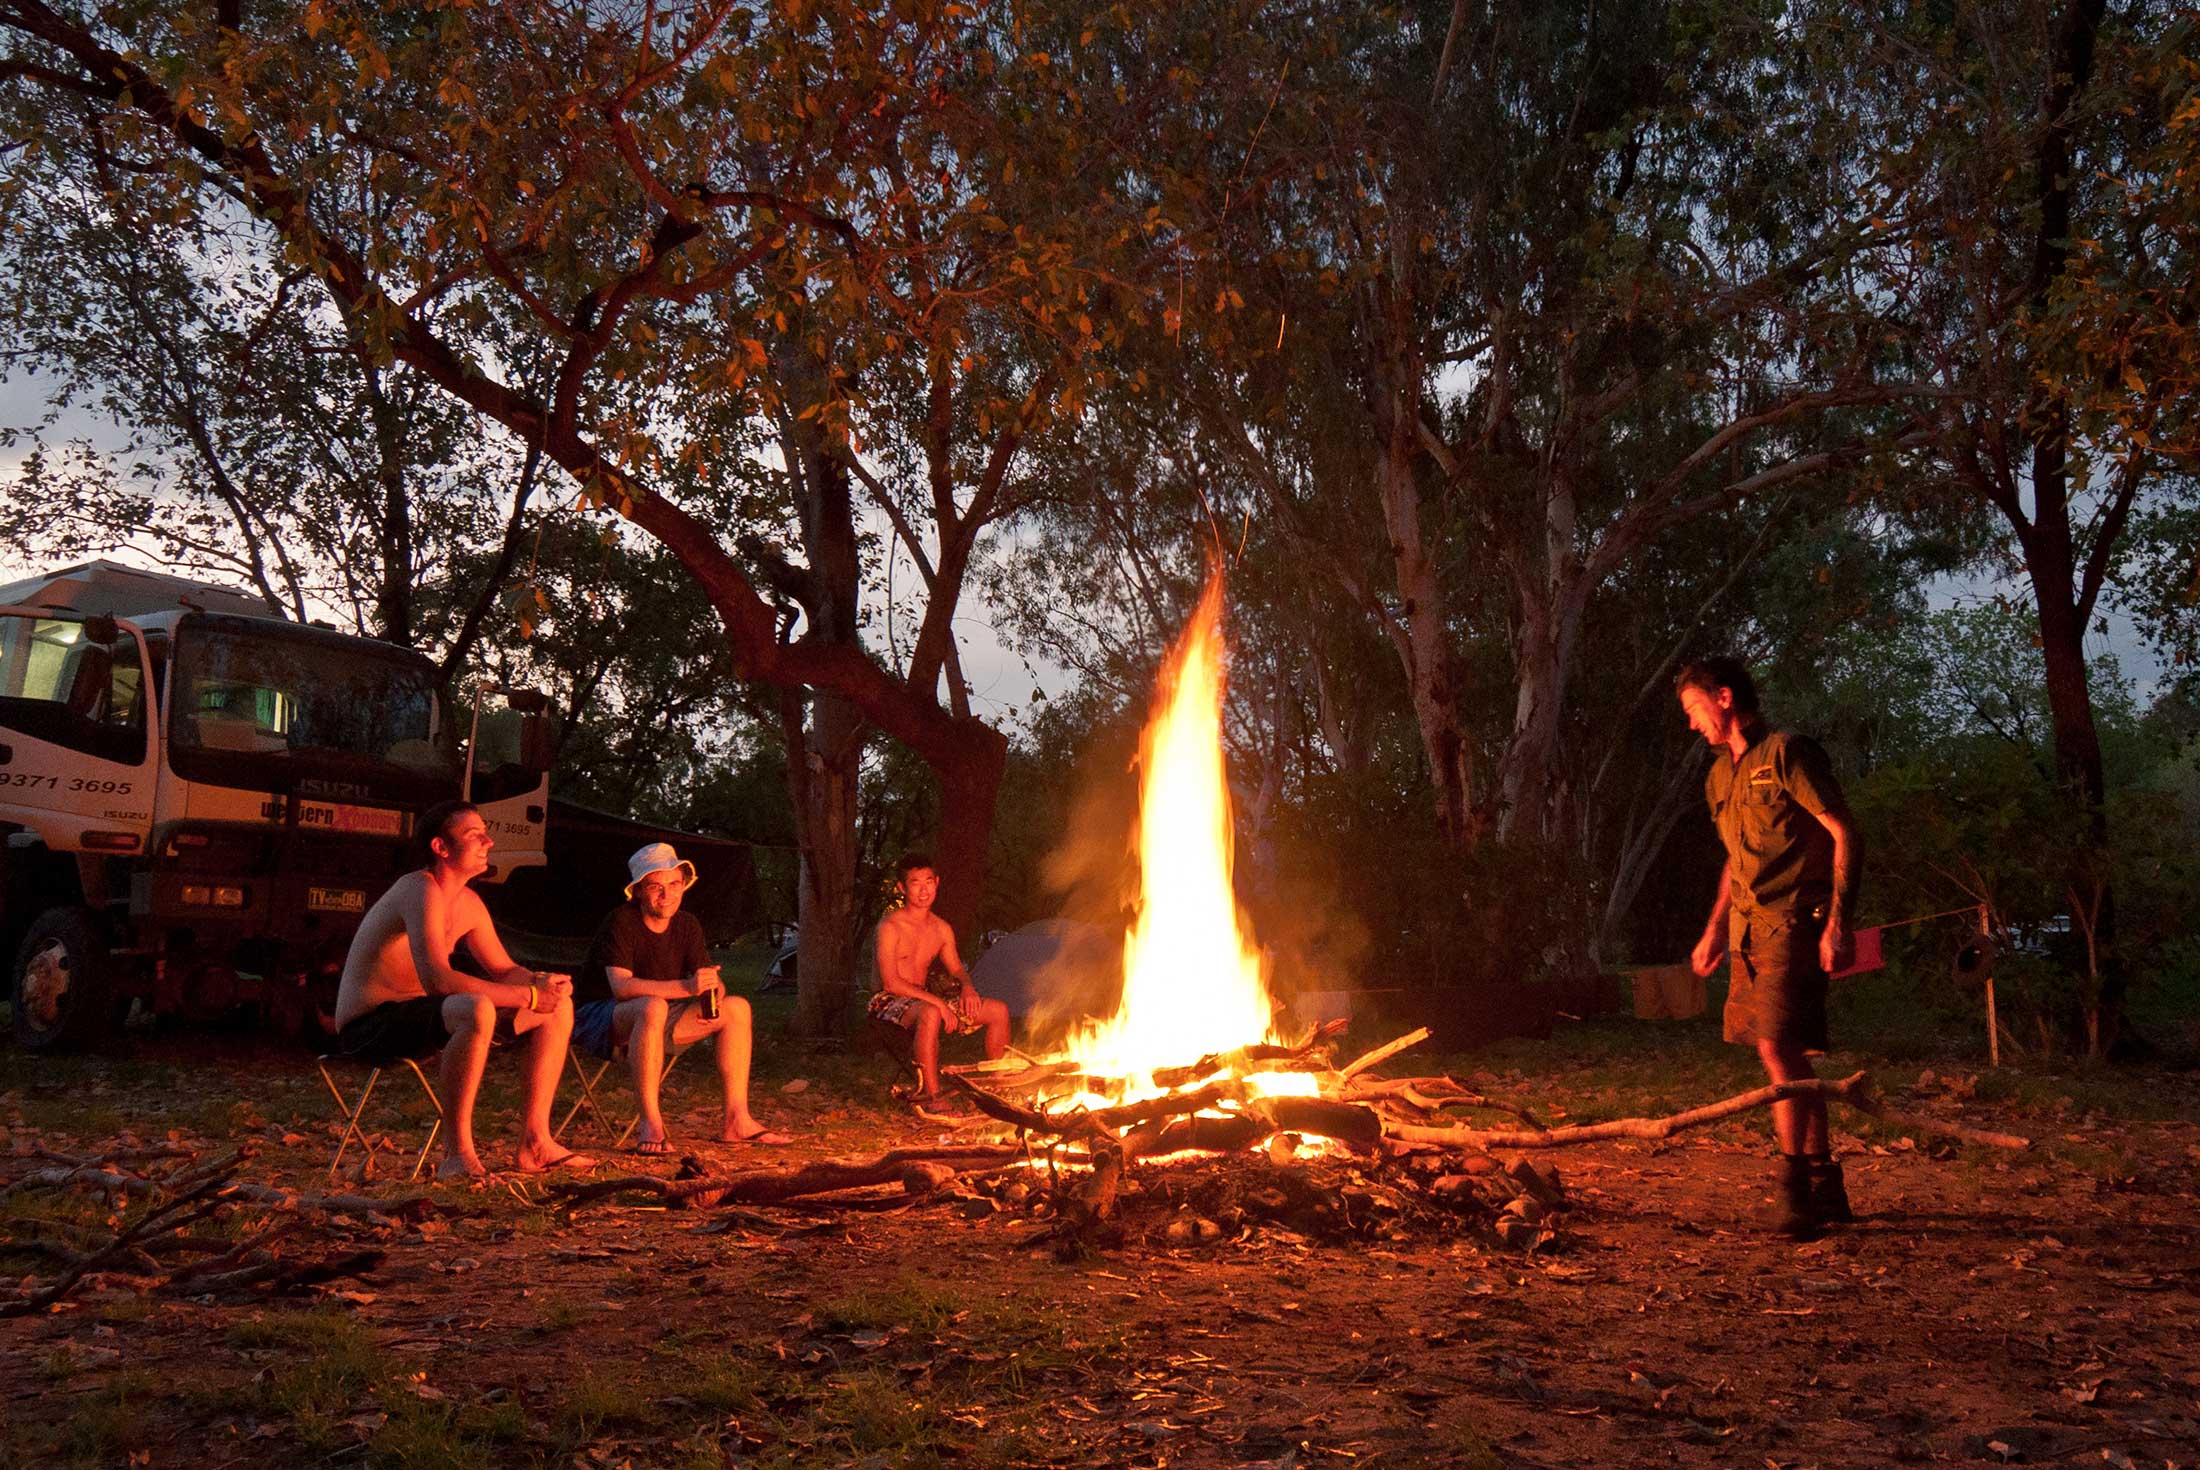 Friends around a campfire at El Questro, Western Australia